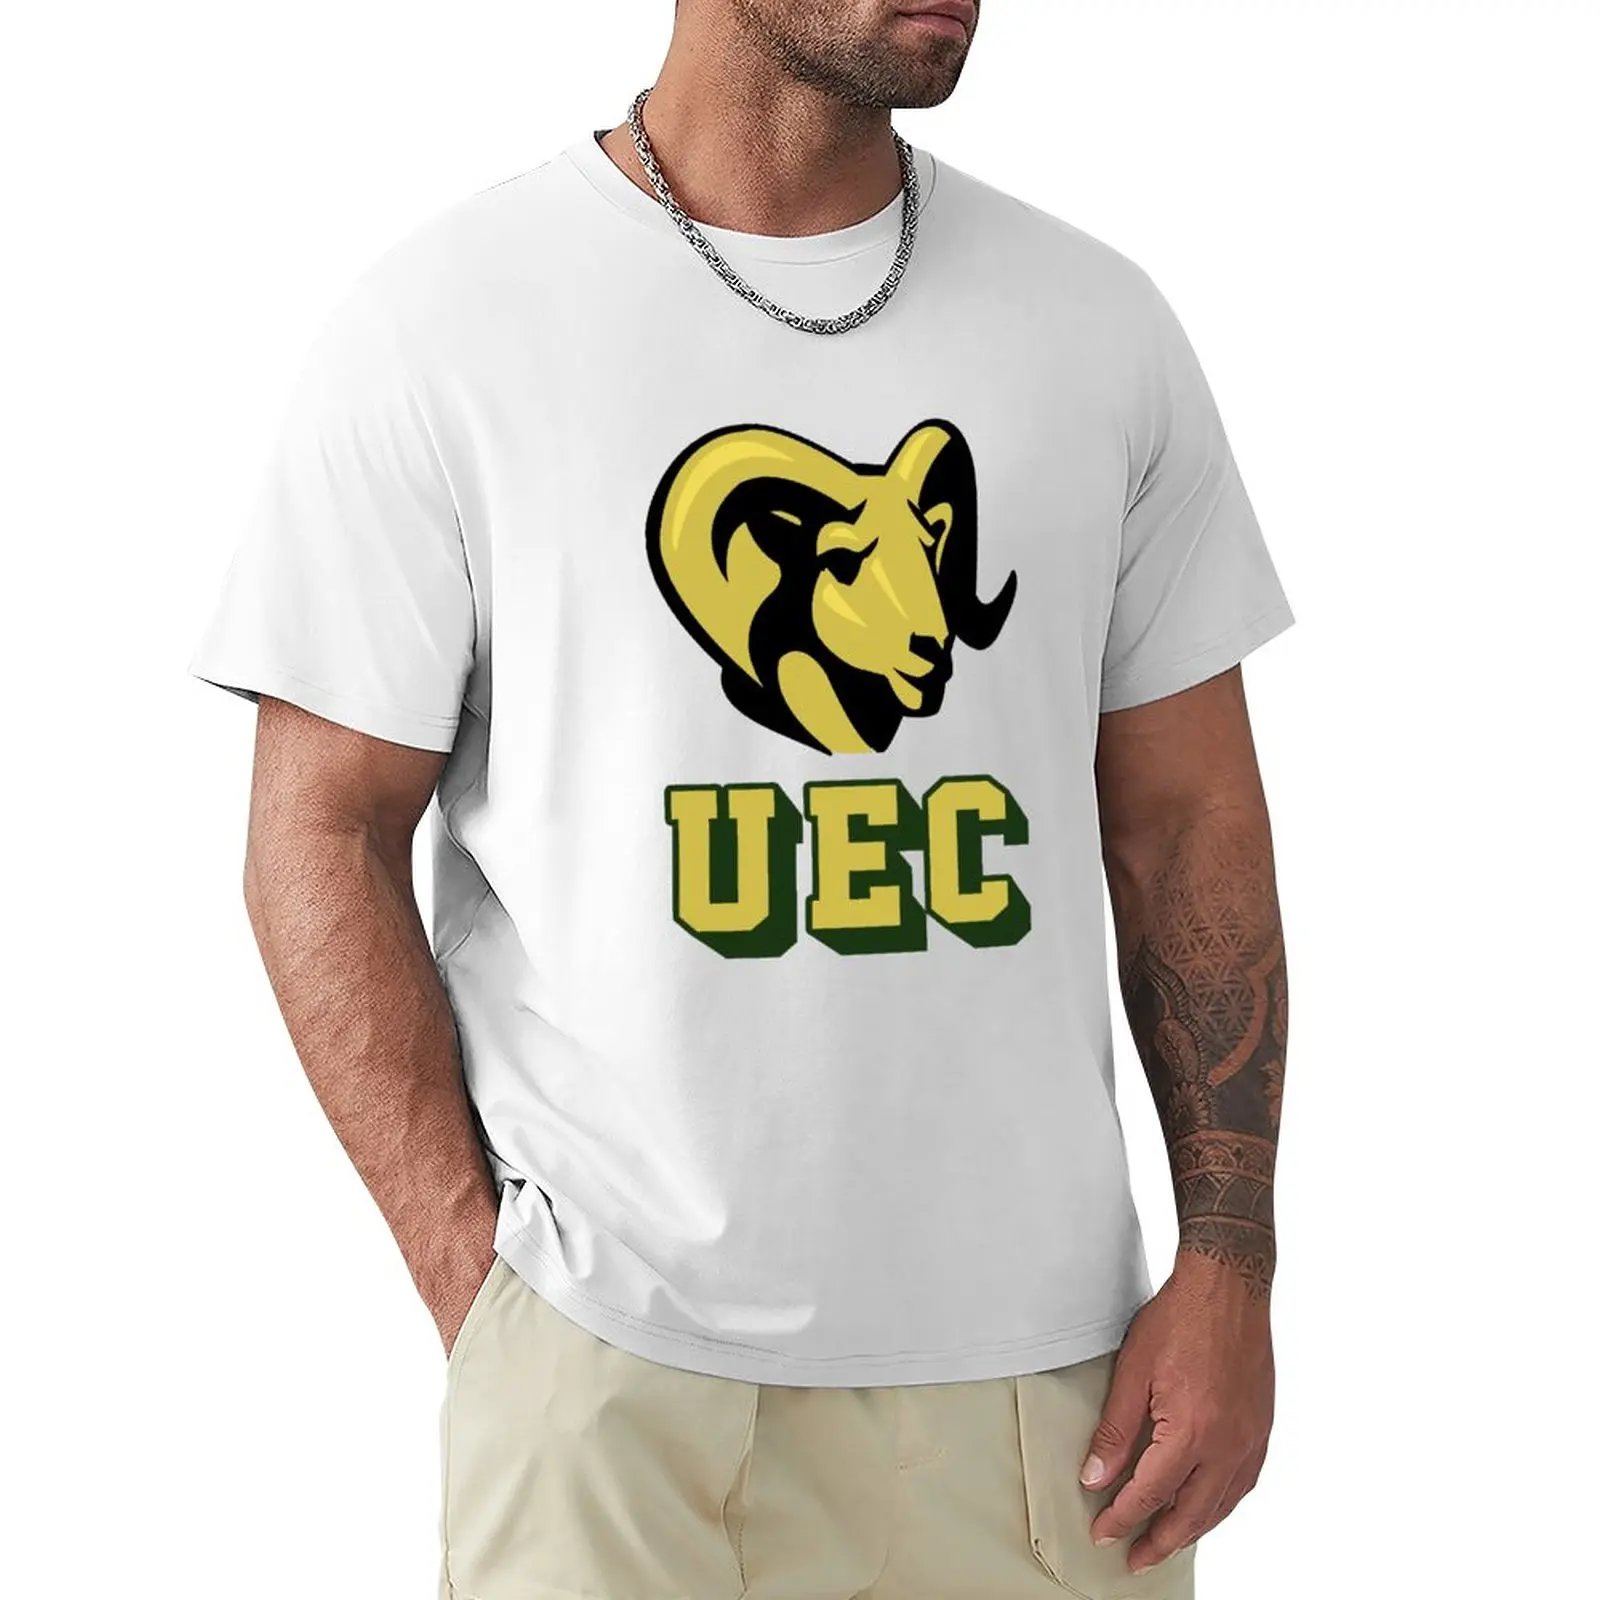 Футболка Университета Восточного Колорадо, футболки больших размеров, футболка blondie, эстетическая одежда, футболки с тяжелым весом для мужчин